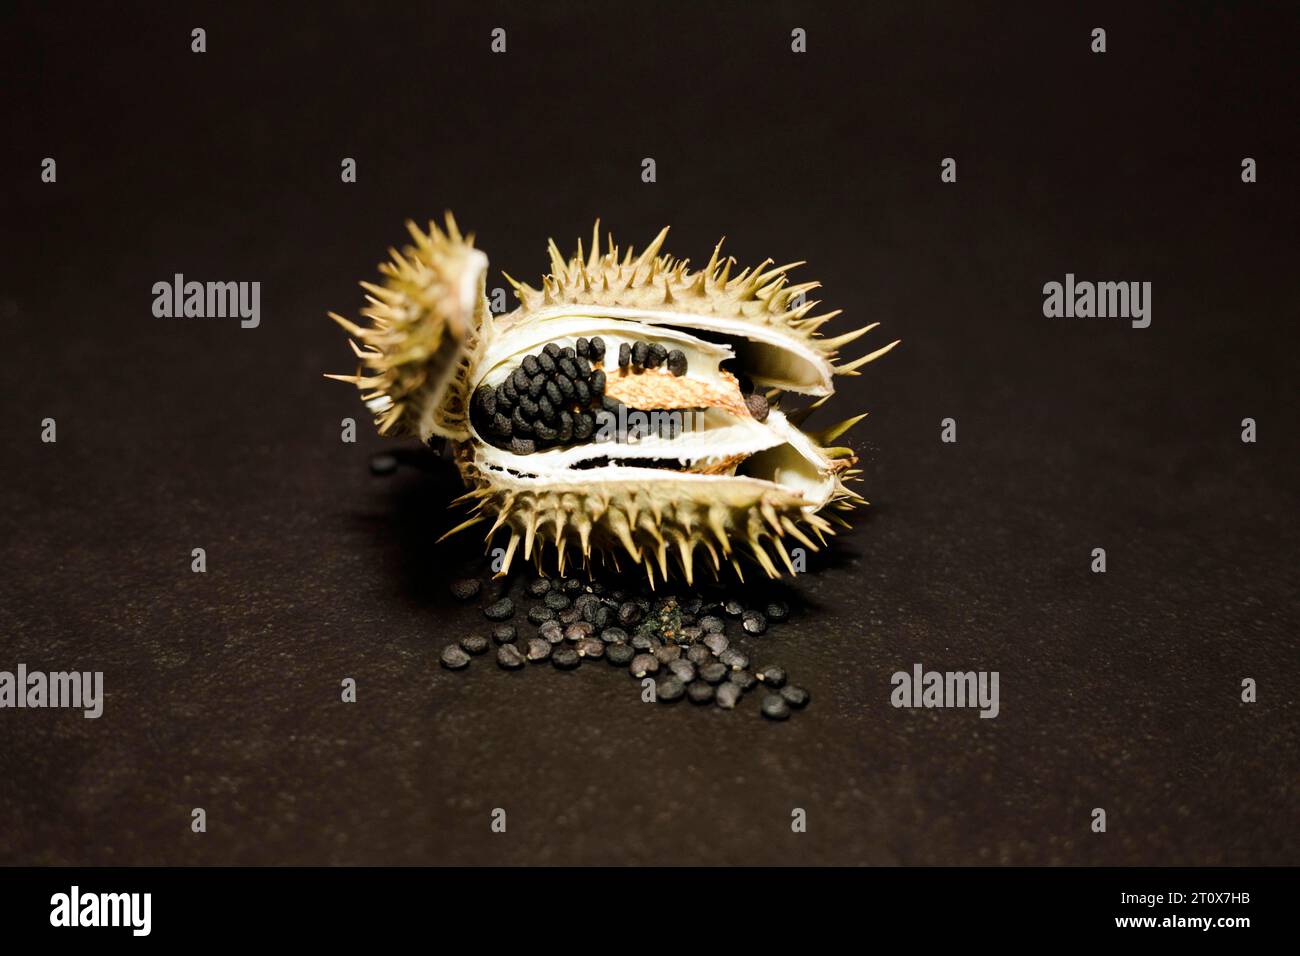 Geöffnete Samenkapsel mit Samen eines giftigen (Datura), Studiofoto mit schwarzem Hintergrund Stockfoto